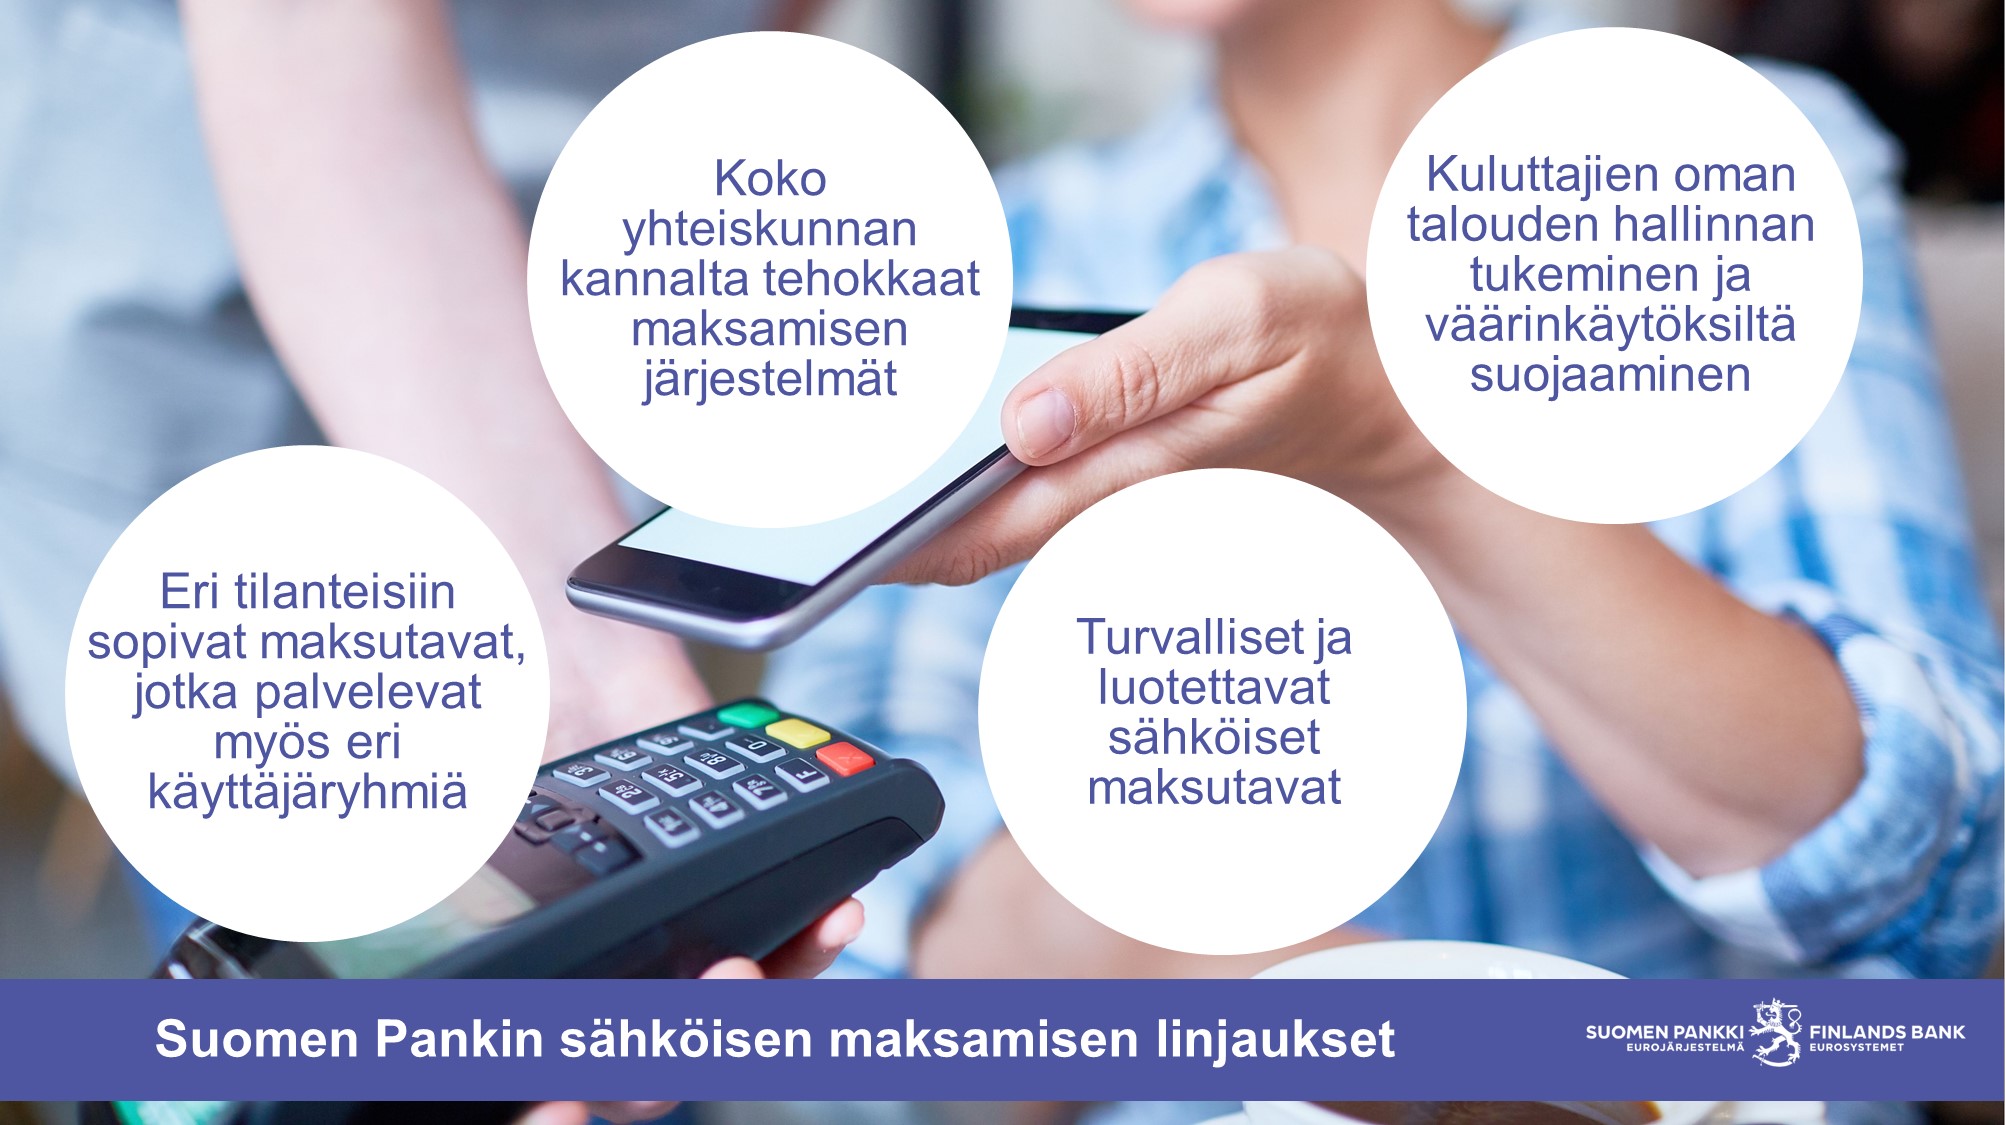 Suomen Pankin sähköisen maksamisen linjaukset: Eri tilanteisiin sopivat maksutavat, jotka palvelevat myös eri käyttäjäryhmiä. Koko yhteiskunnan kannalta tehokkaat maksamisen järjestelmät. Turvalliset ja luotettavat sähköiset maksutavat. Kuluttajien oman talouden hallinnan tukeminen ja väärinkäytöksiltä suojaaminen.